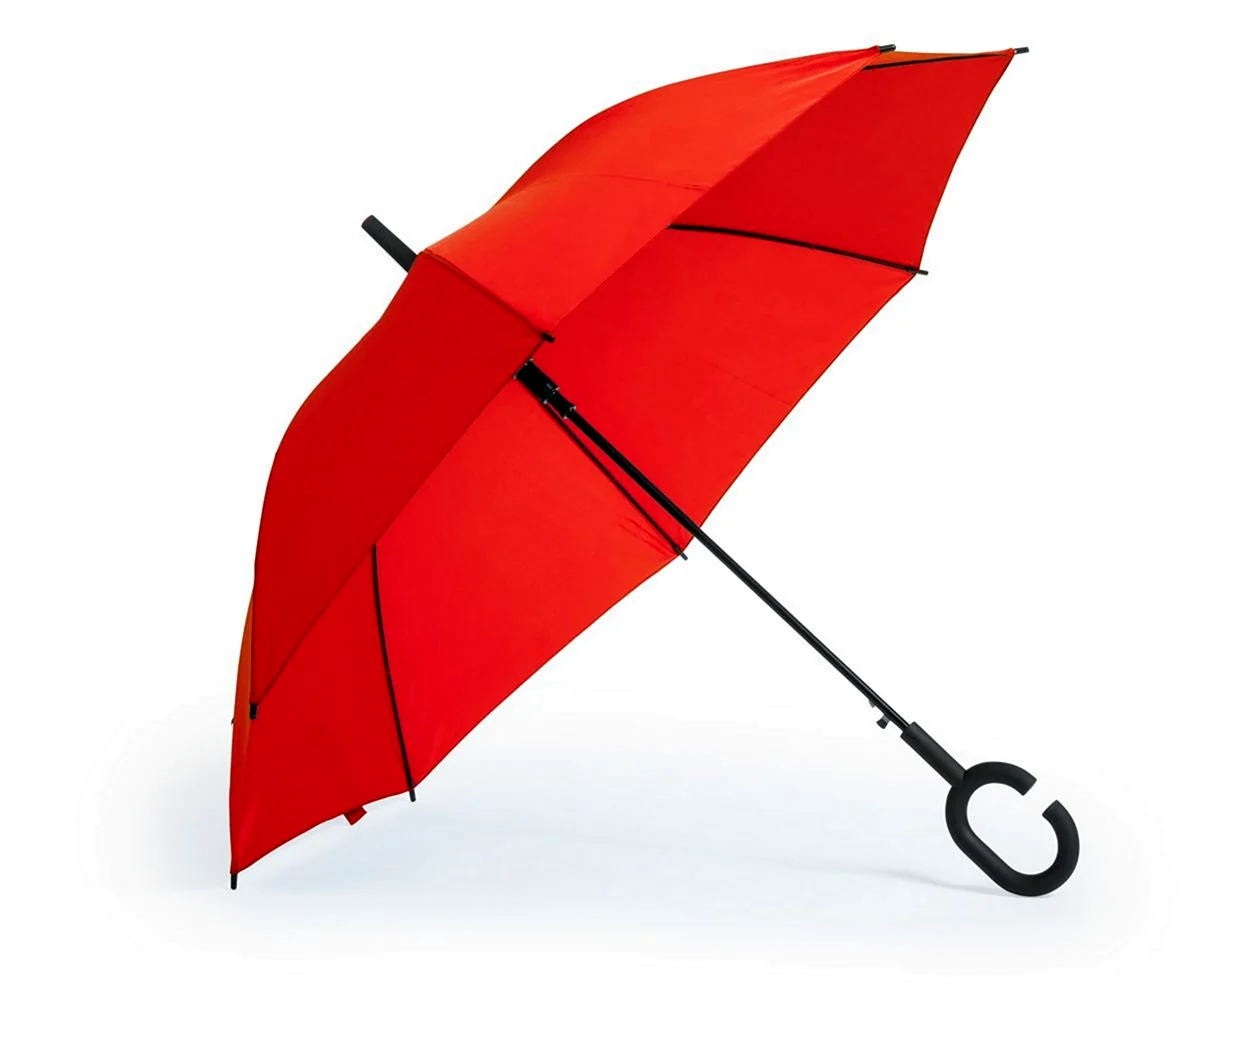 Большой зонт-трость Audi large Umbrella Red. Новый